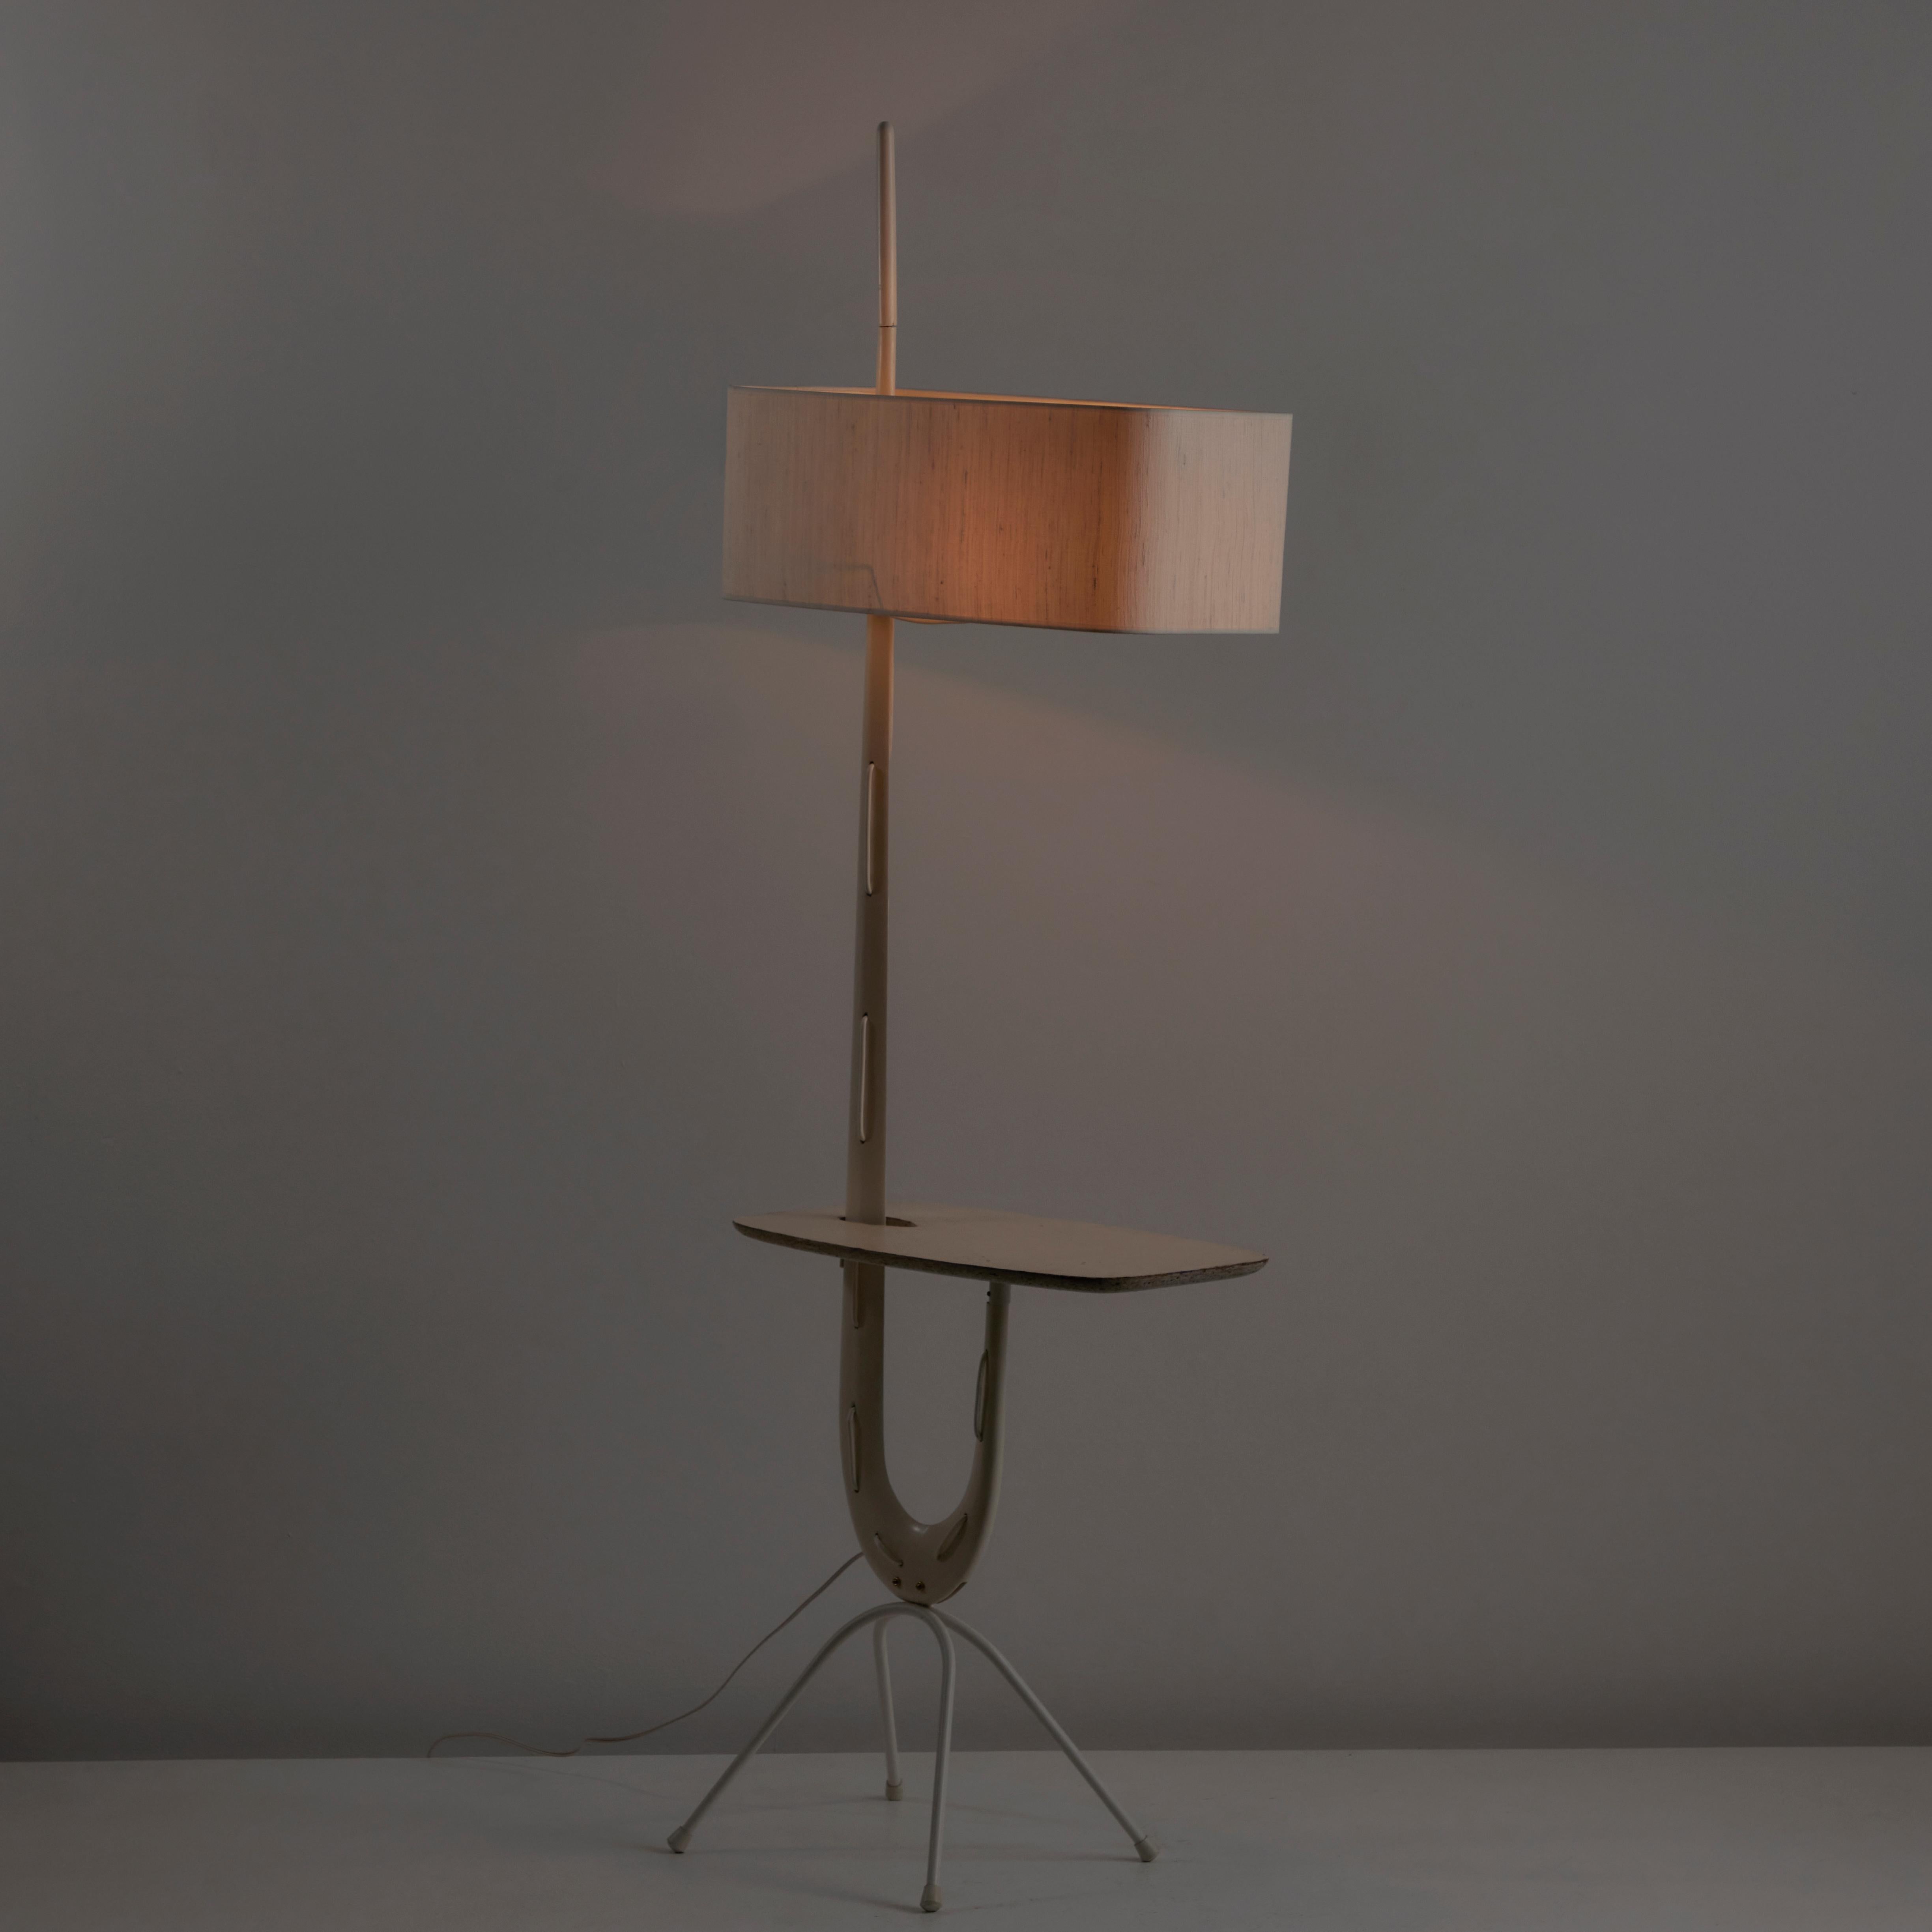 Rare lampadaire modèle 14.952 de Rispal. Conçu et fabriqué en France, vers 1950. Lampadaire incroyablement rare et unique, avec un cadre en bois courbé, peint à la main, comprenant un plateau de table intégré et un pied en métal plié. Le lampadaire